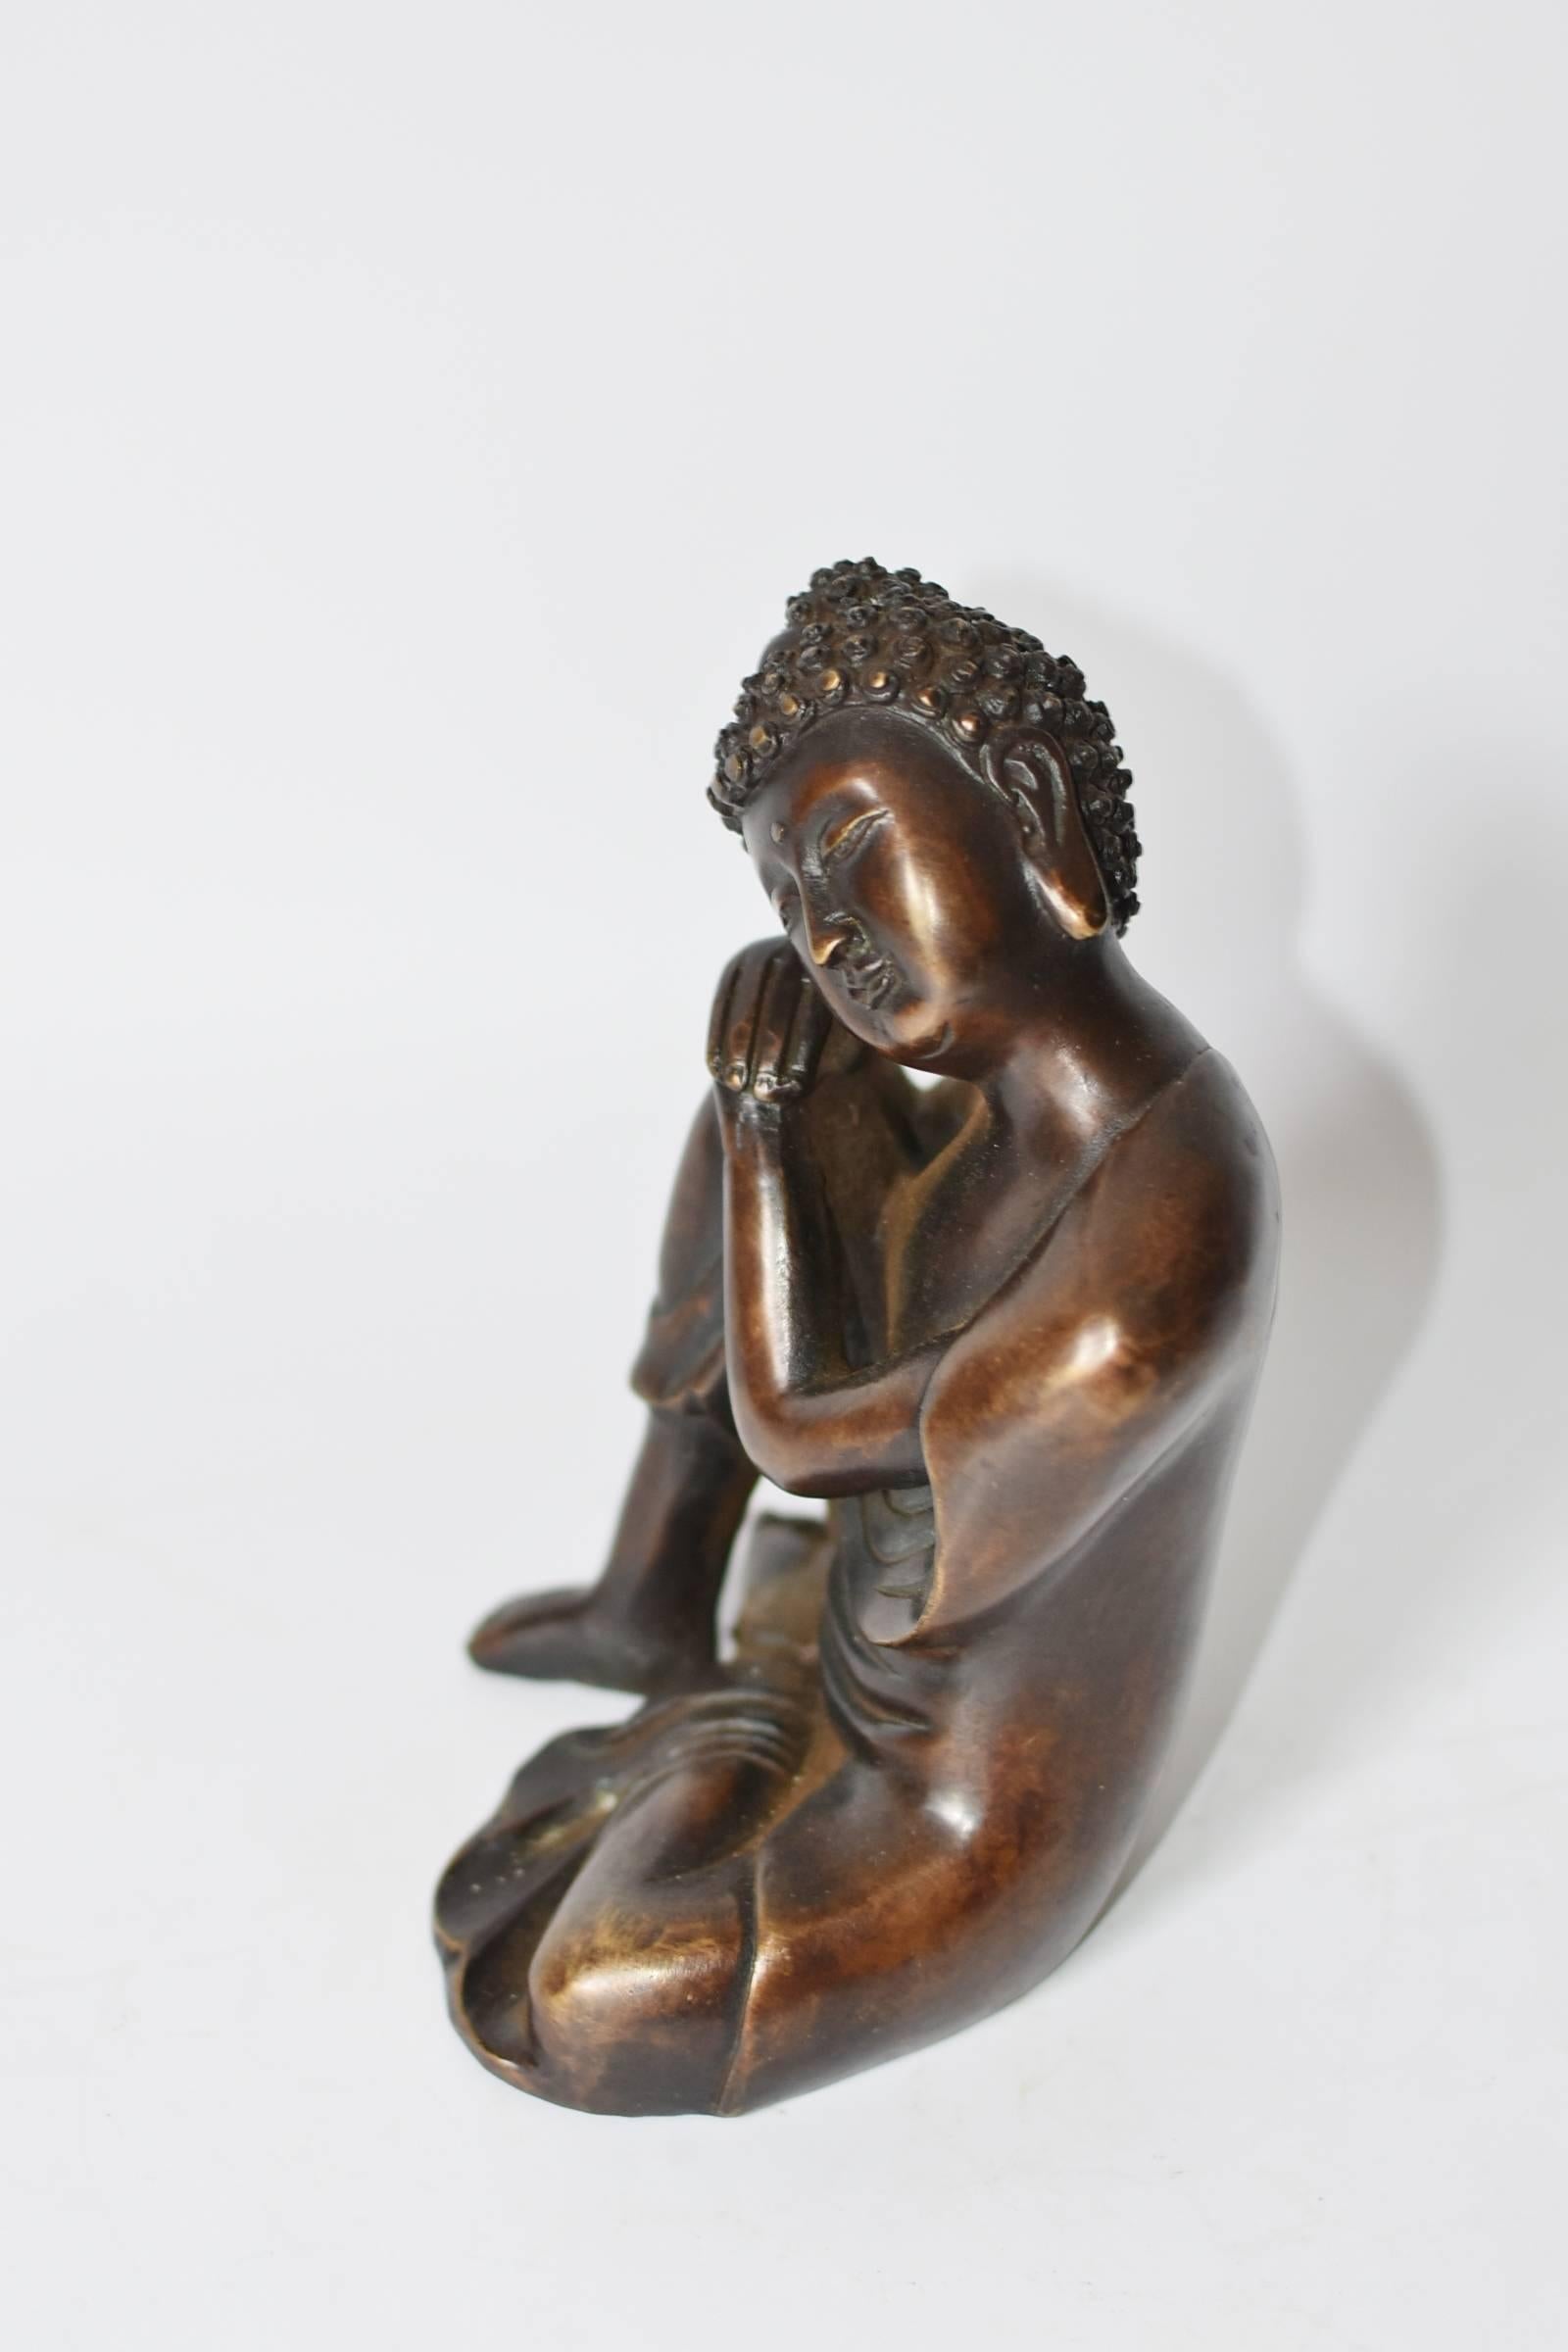 Brass Bronze Buddha Statue, a Thinking Buddha